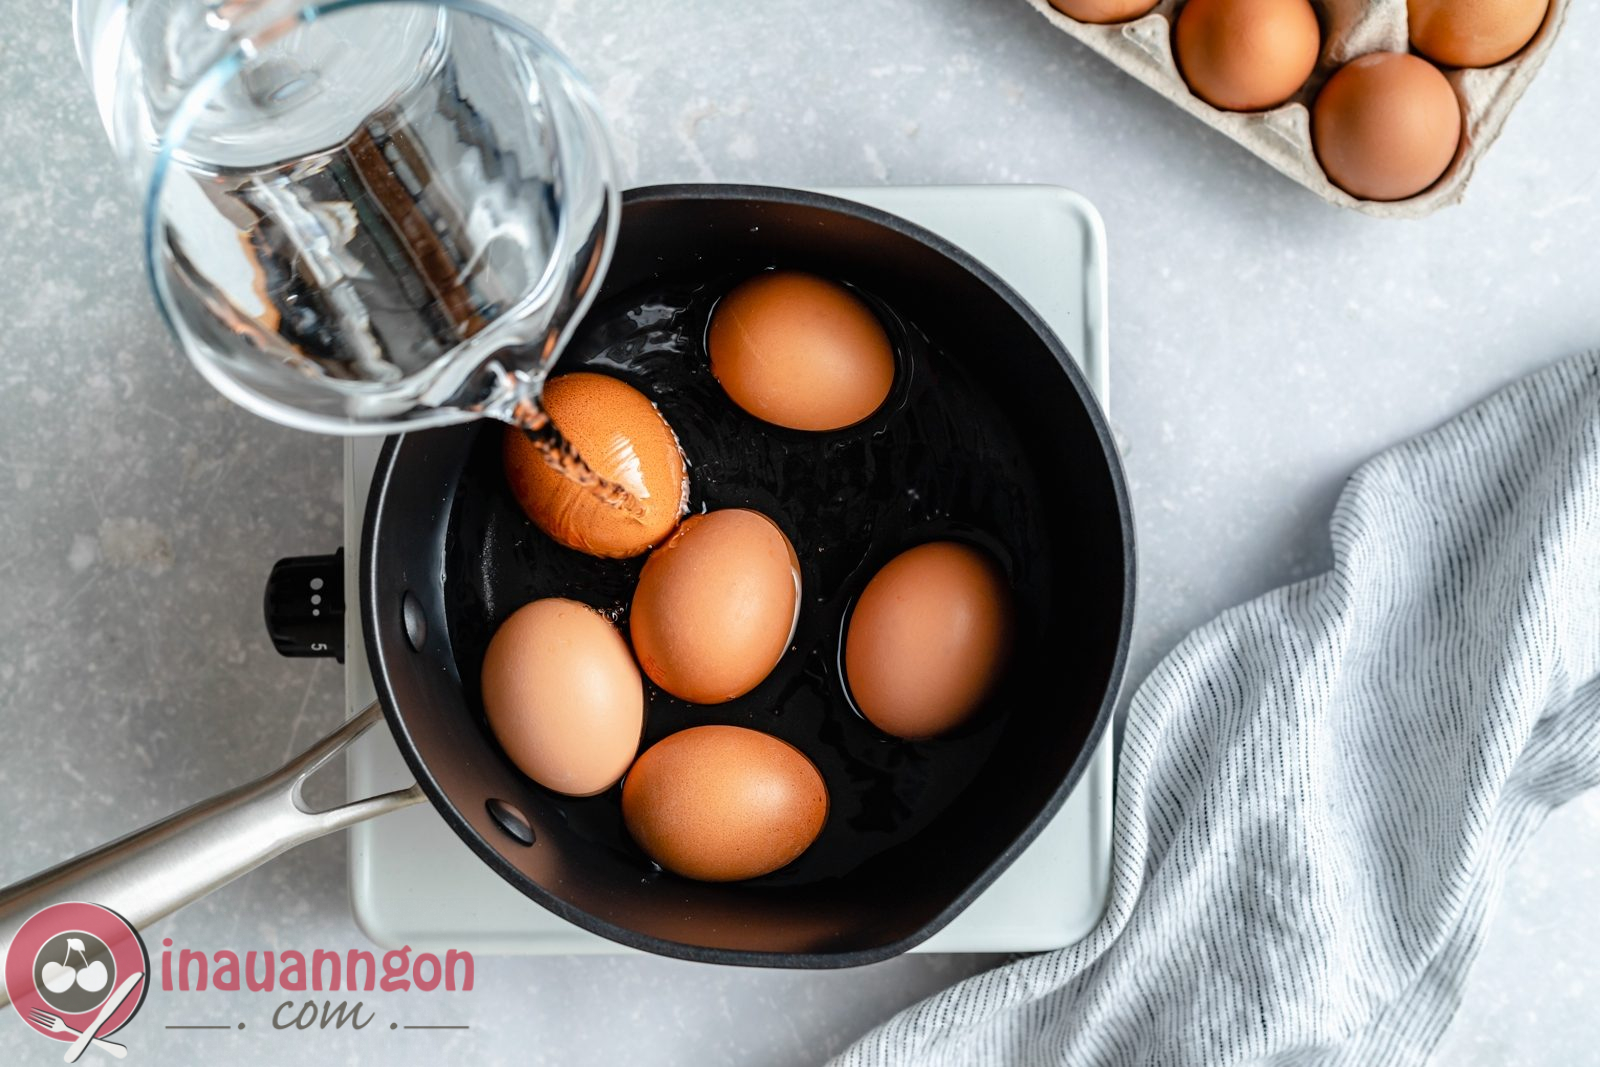 Khi luộc trứng chỉ nên đổ ít nước để tiết kiệm thời gian